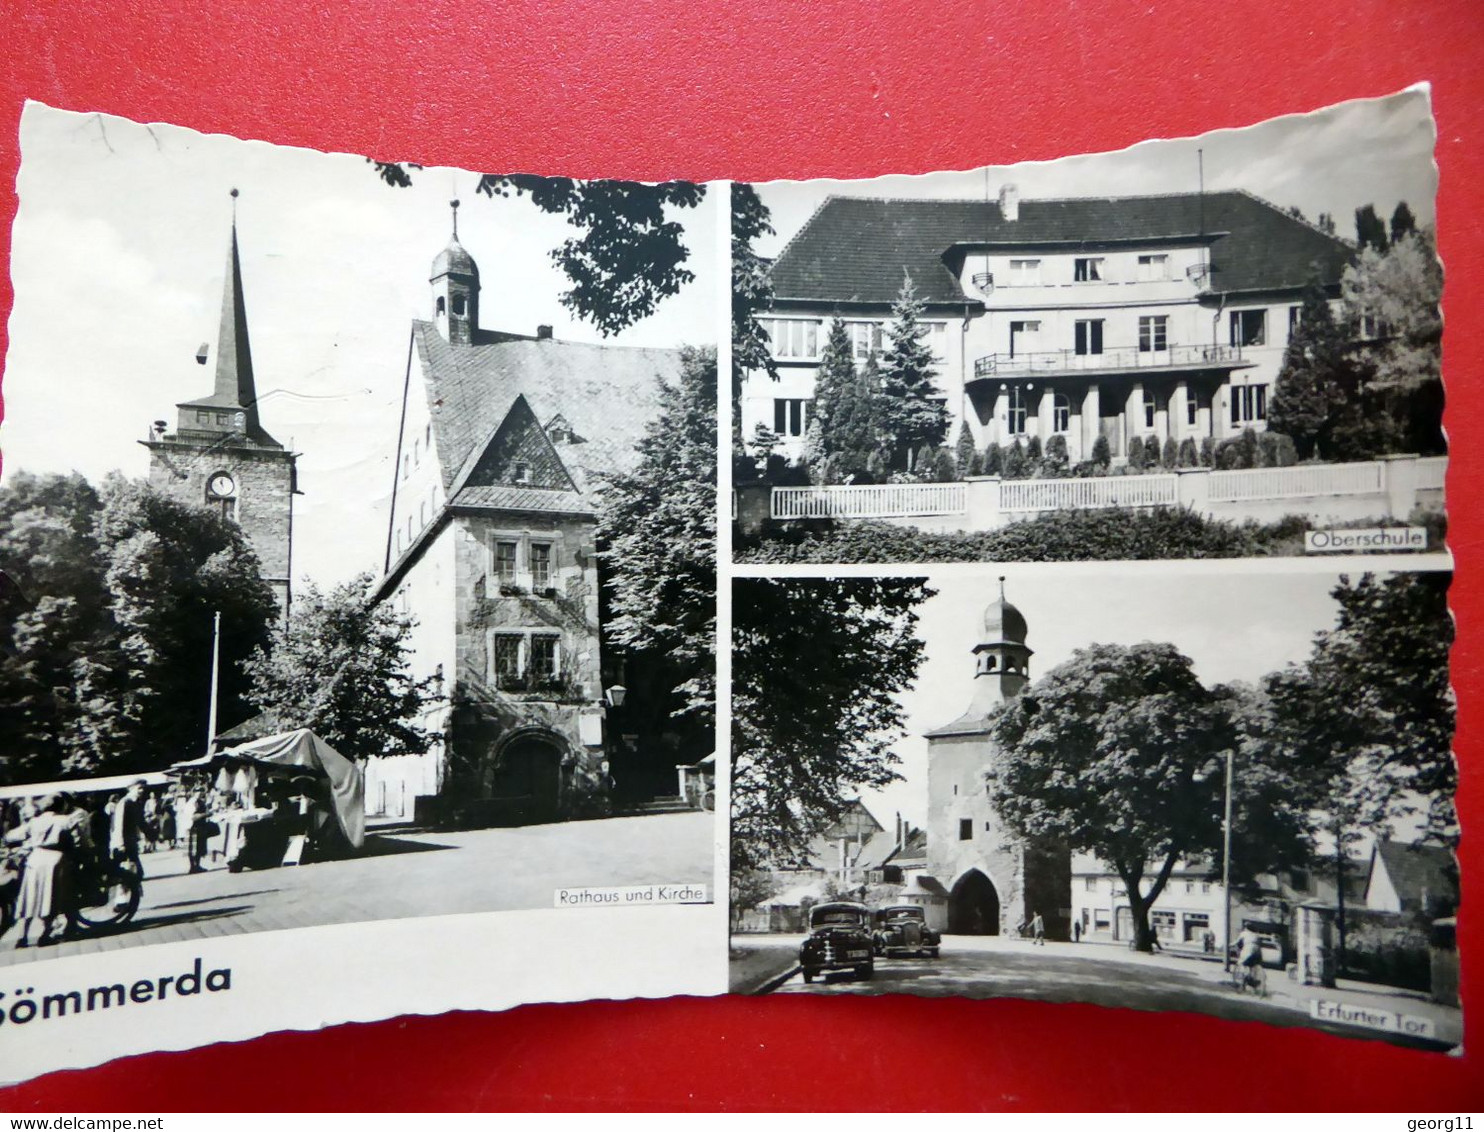 Sömmerda - Oberschule - Marktstände - Auto - Kirche - Echt Foto - Kleinformat DDR 1960 - Thüringen - Sömmerda